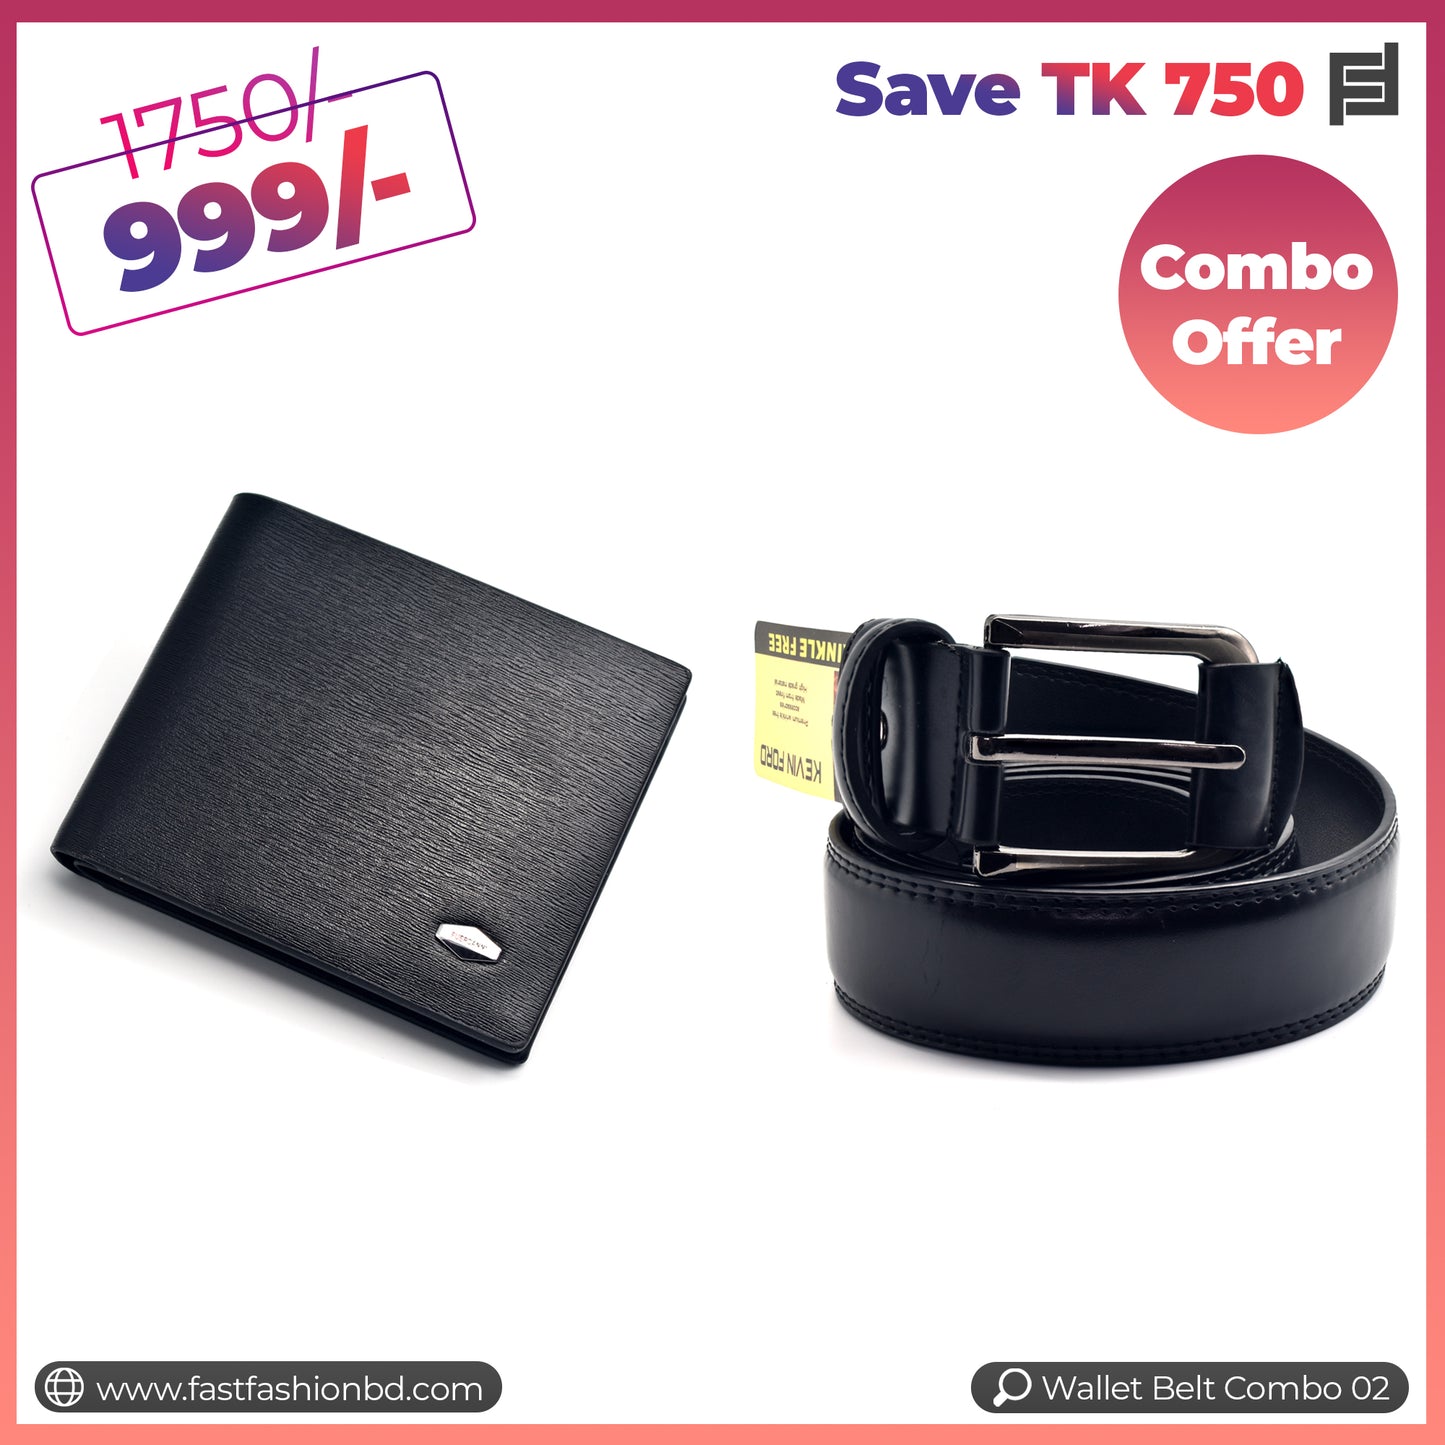 Wallet Belt Combo Offer Save TK 750 - Wallet Belt Combo 02